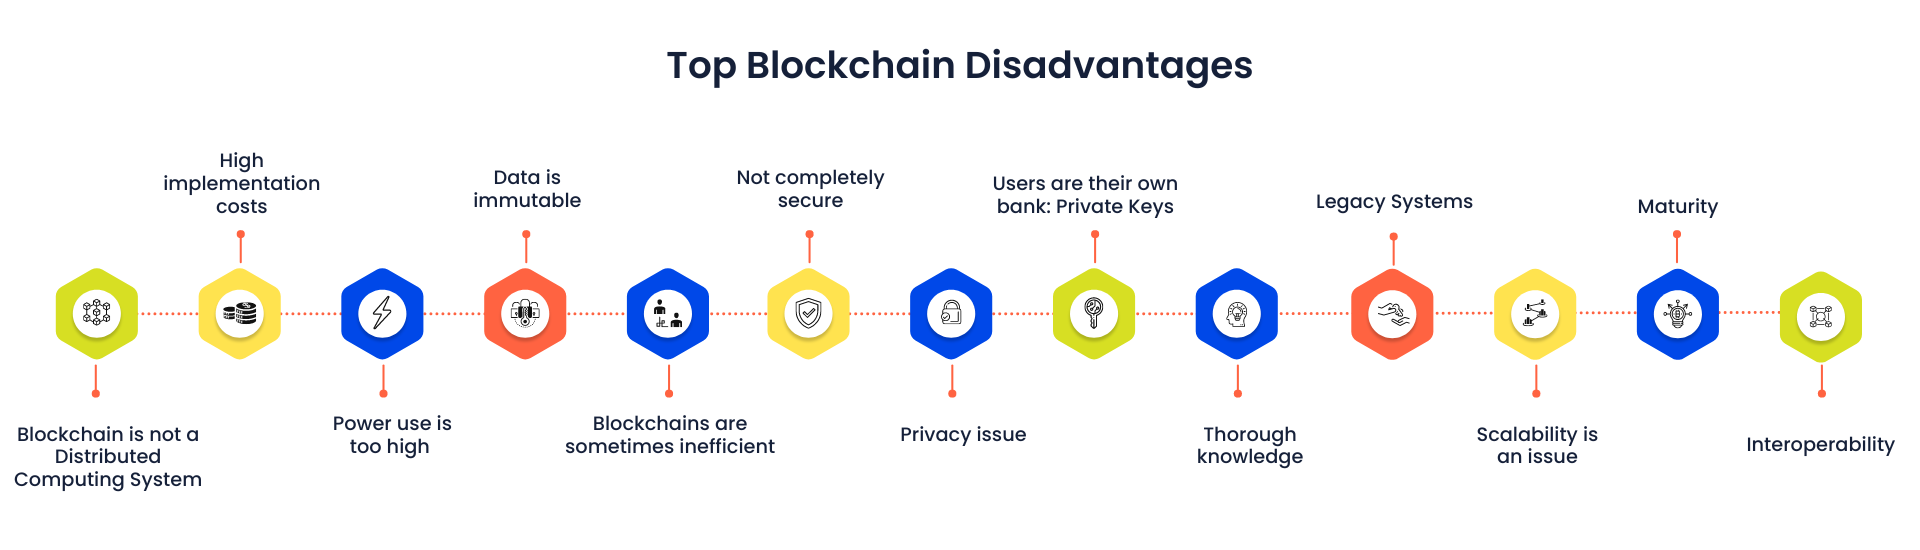 Top Blockchain Disadvantages